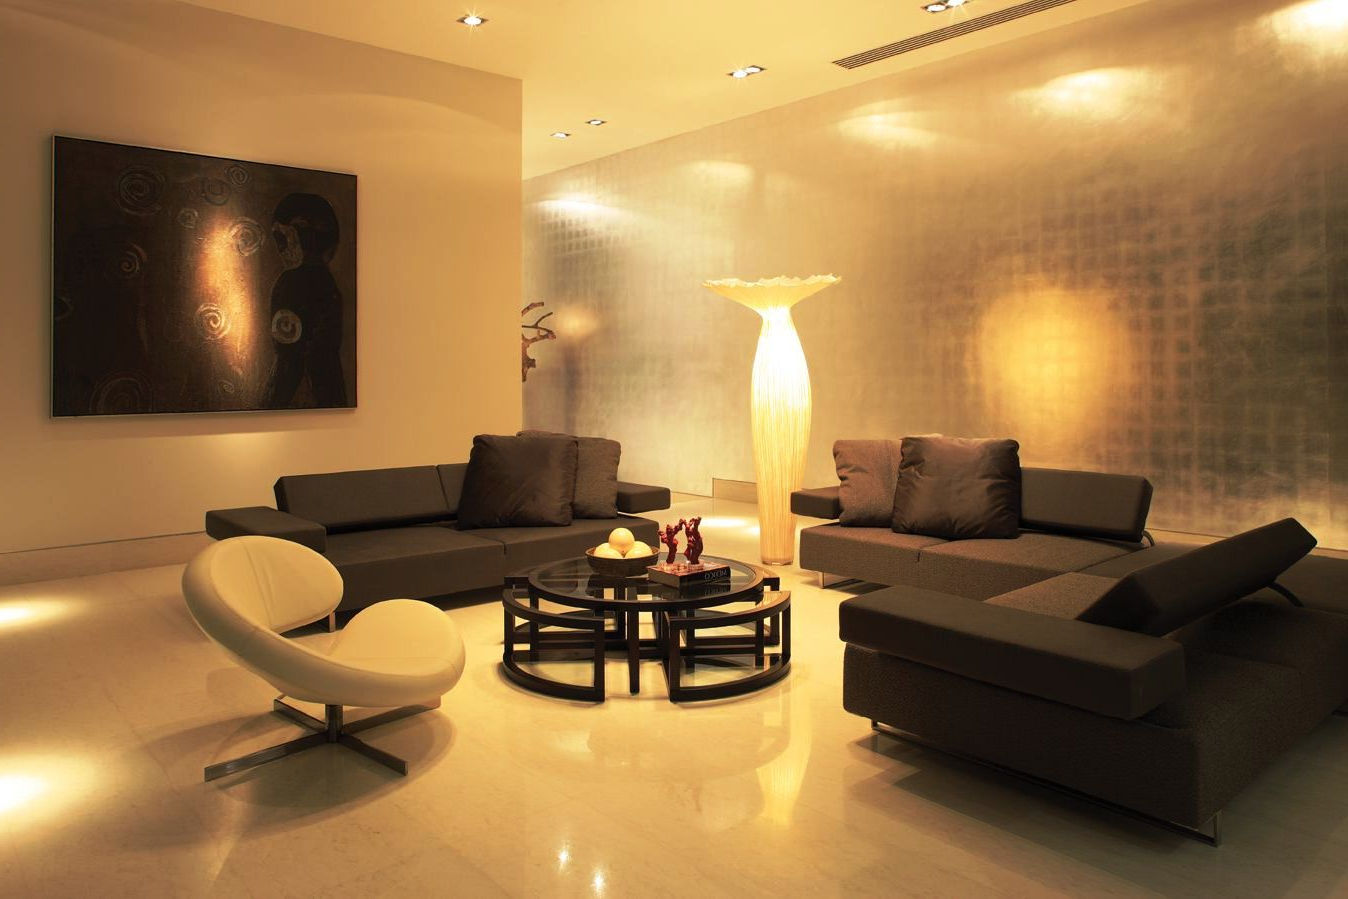 diy uplighting living room ideas